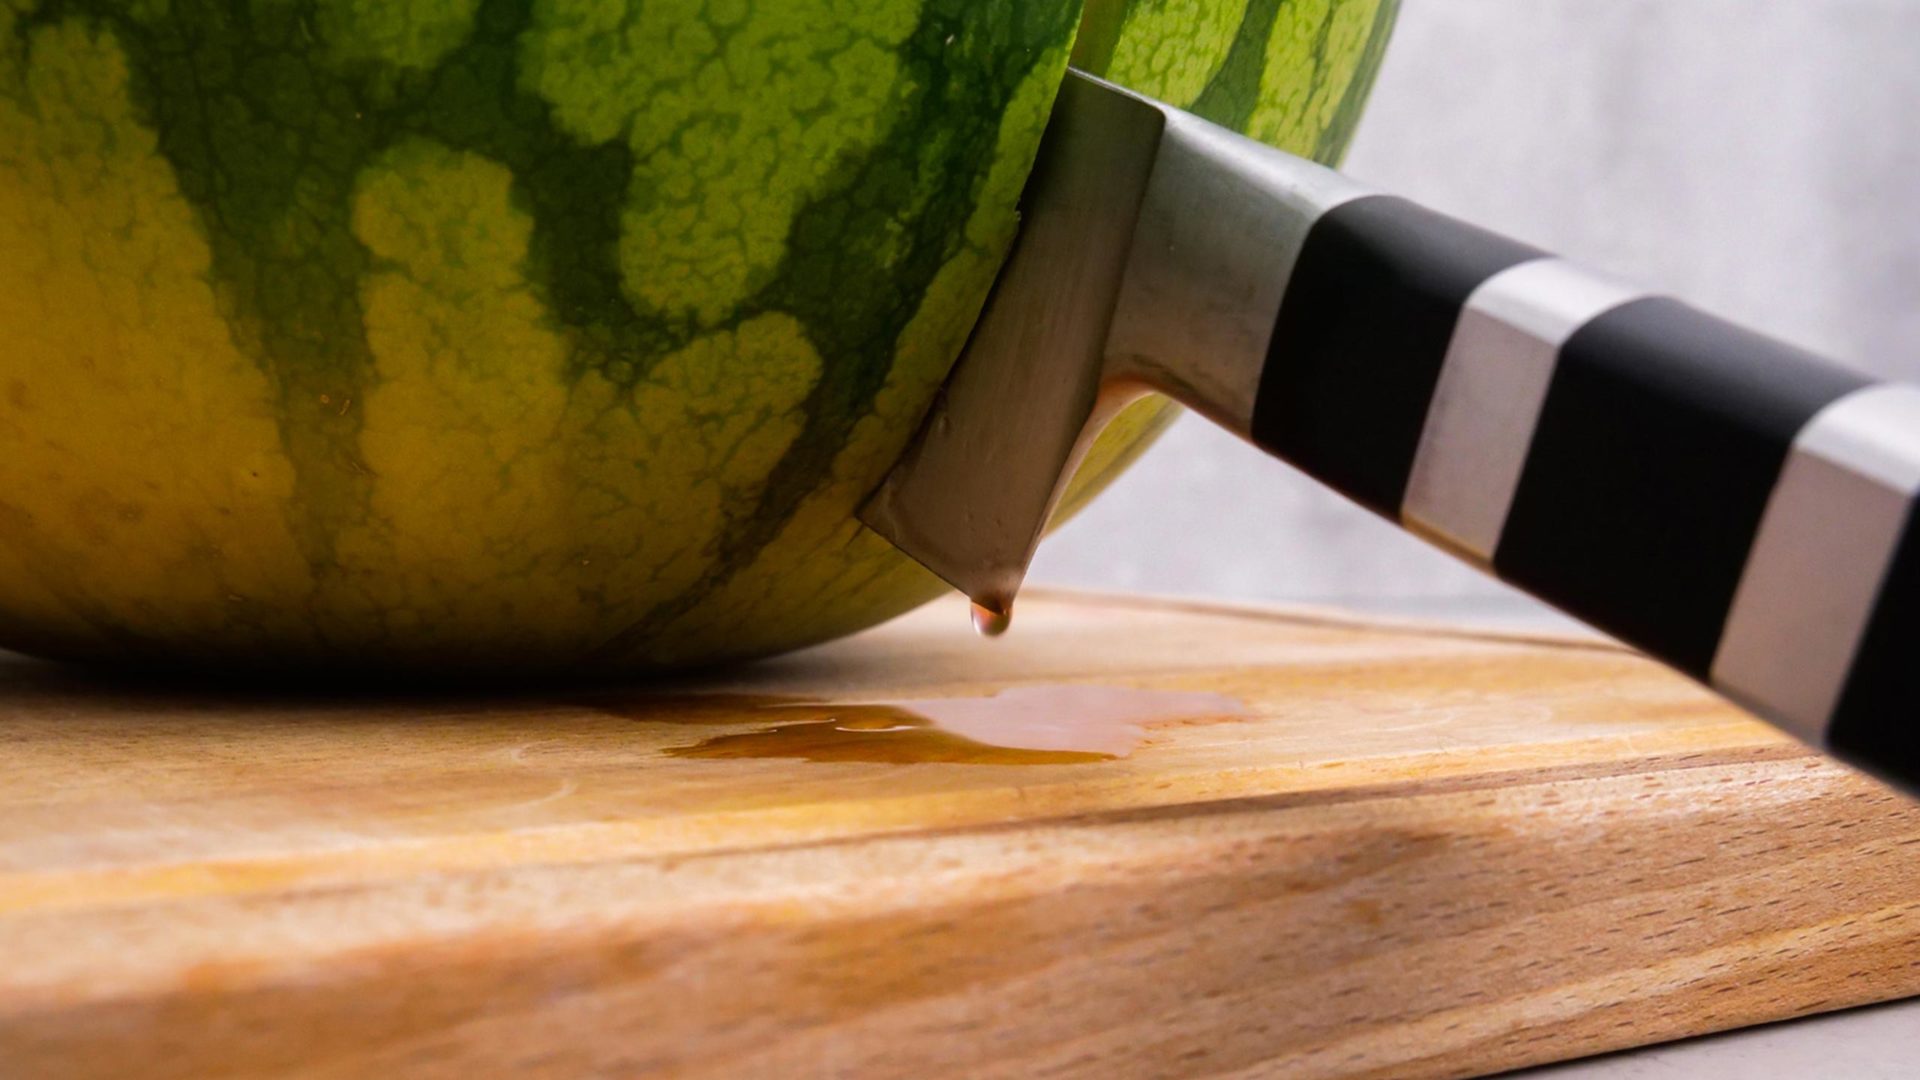 Messer, das in Wassermelone steckt